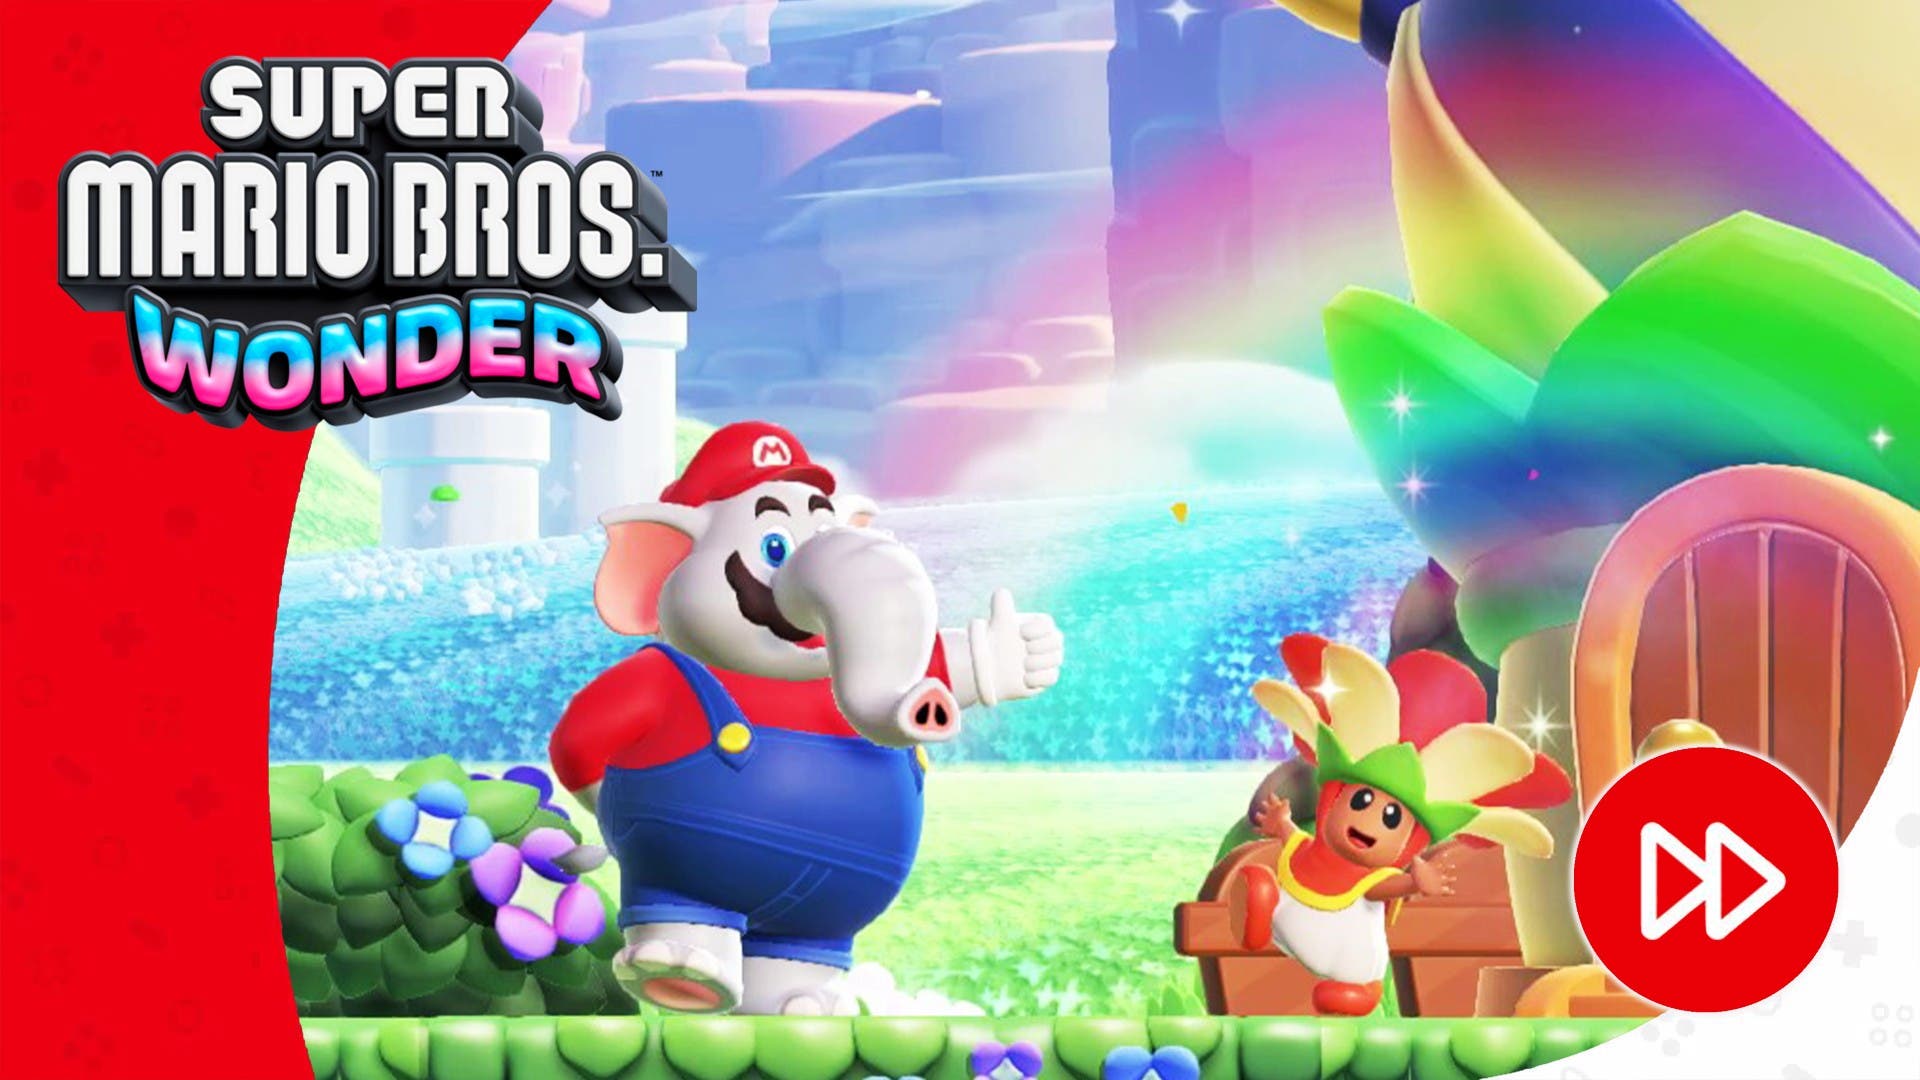 Impresiones finales de Super Mario Bros. Wonder para Nintendo Switch